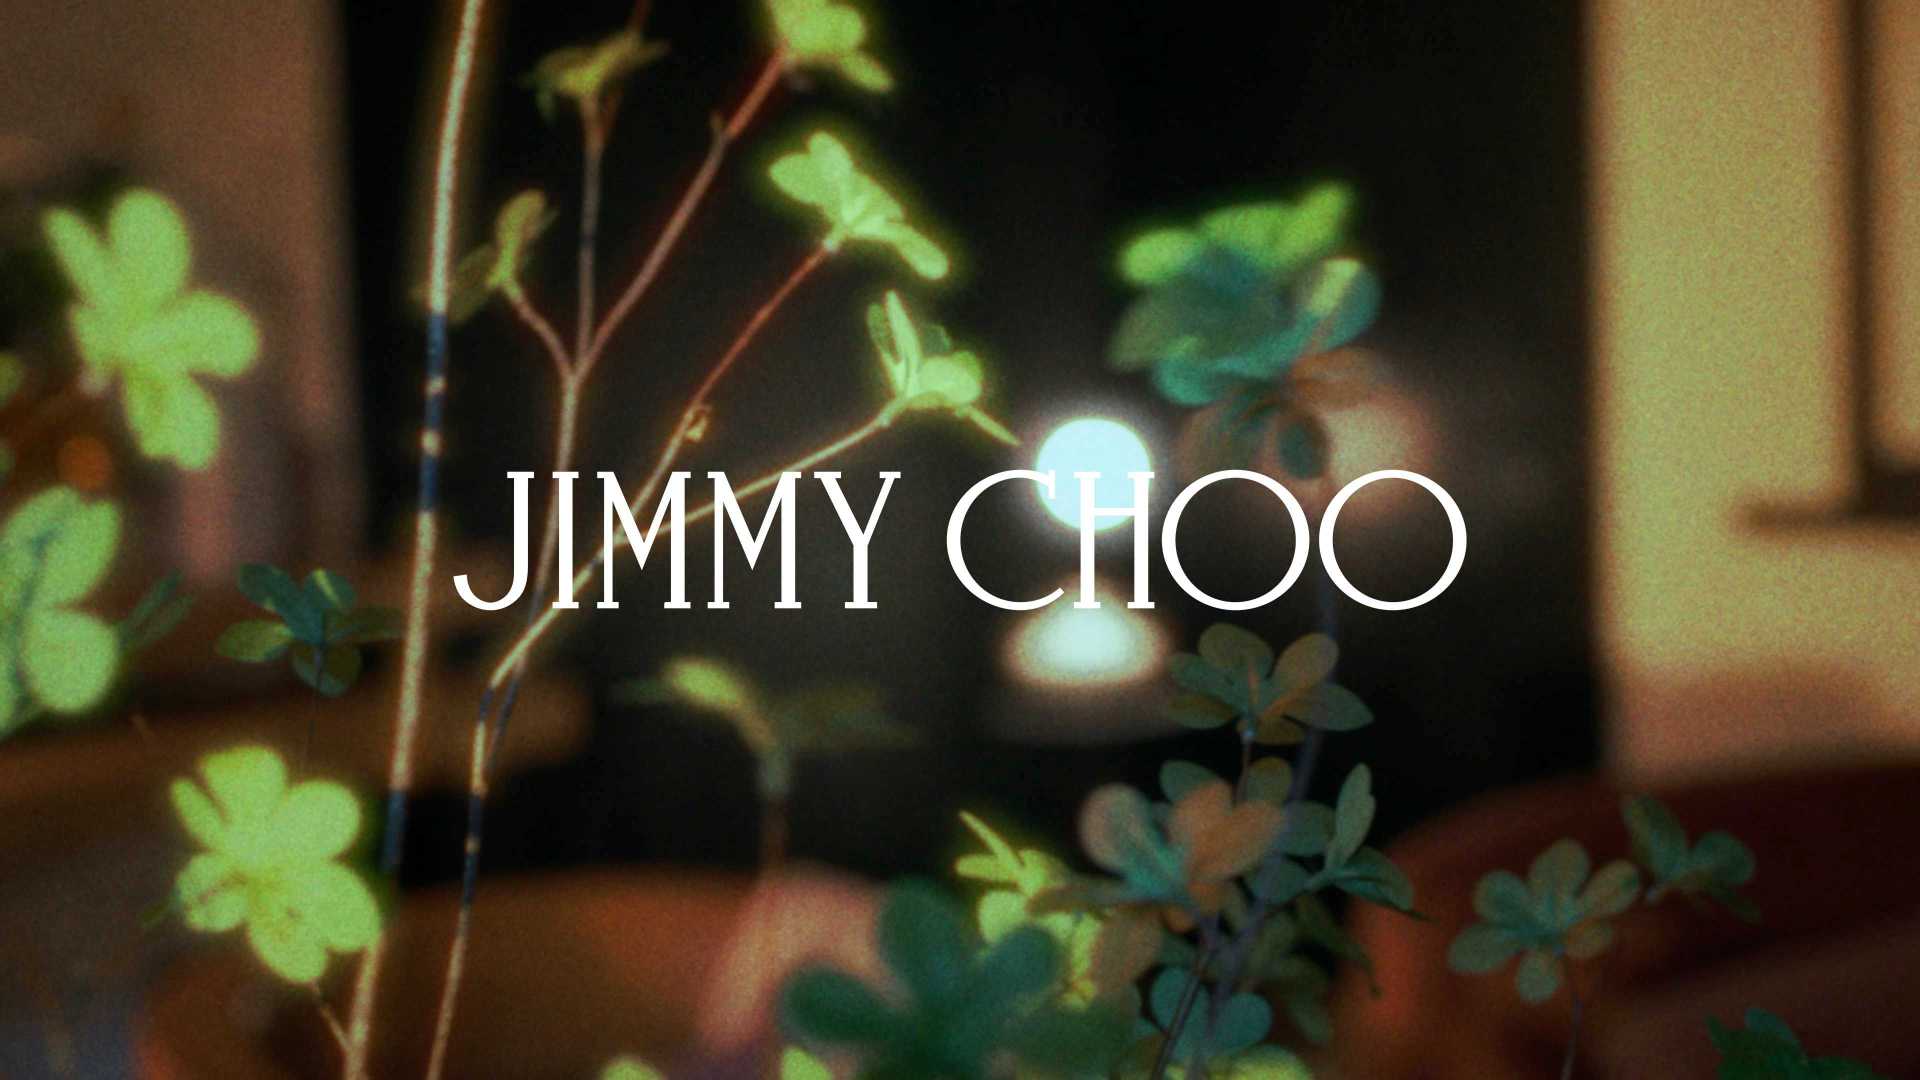 JIMMY CHOO｜MY DAY WITH CHOO-SANDRA CHOI